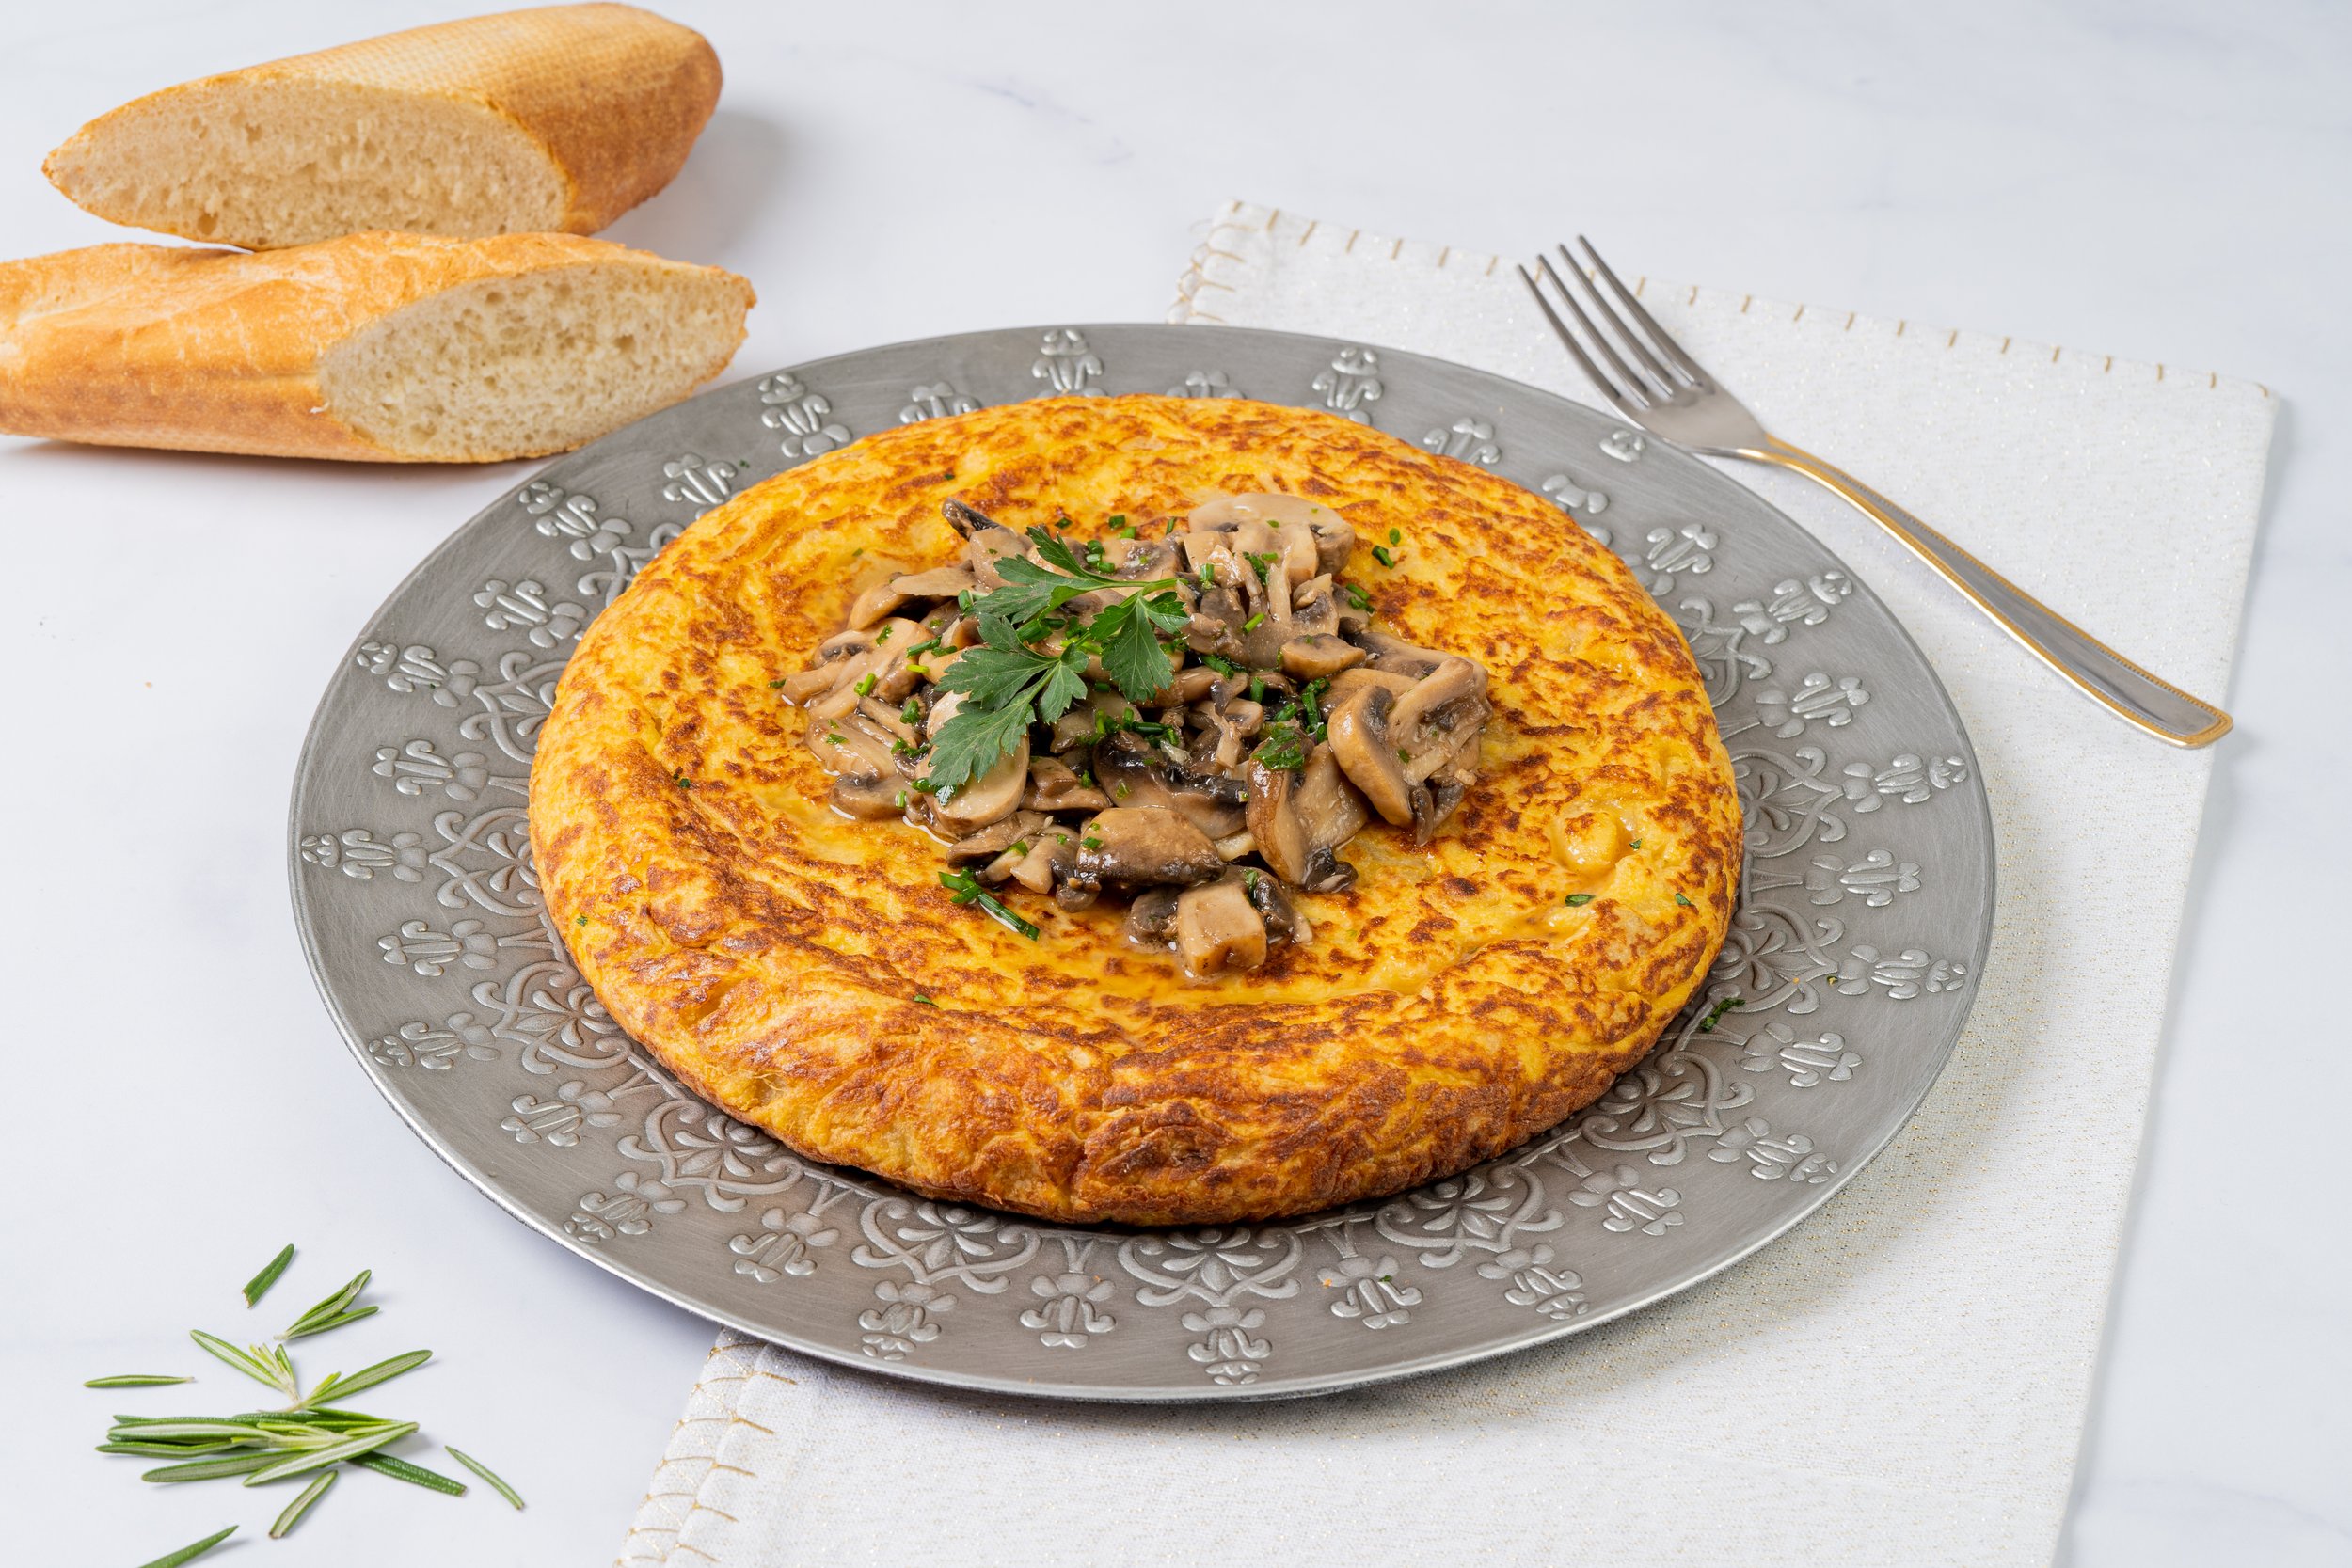 spanish-omelette-with-mushroom (2).jpg